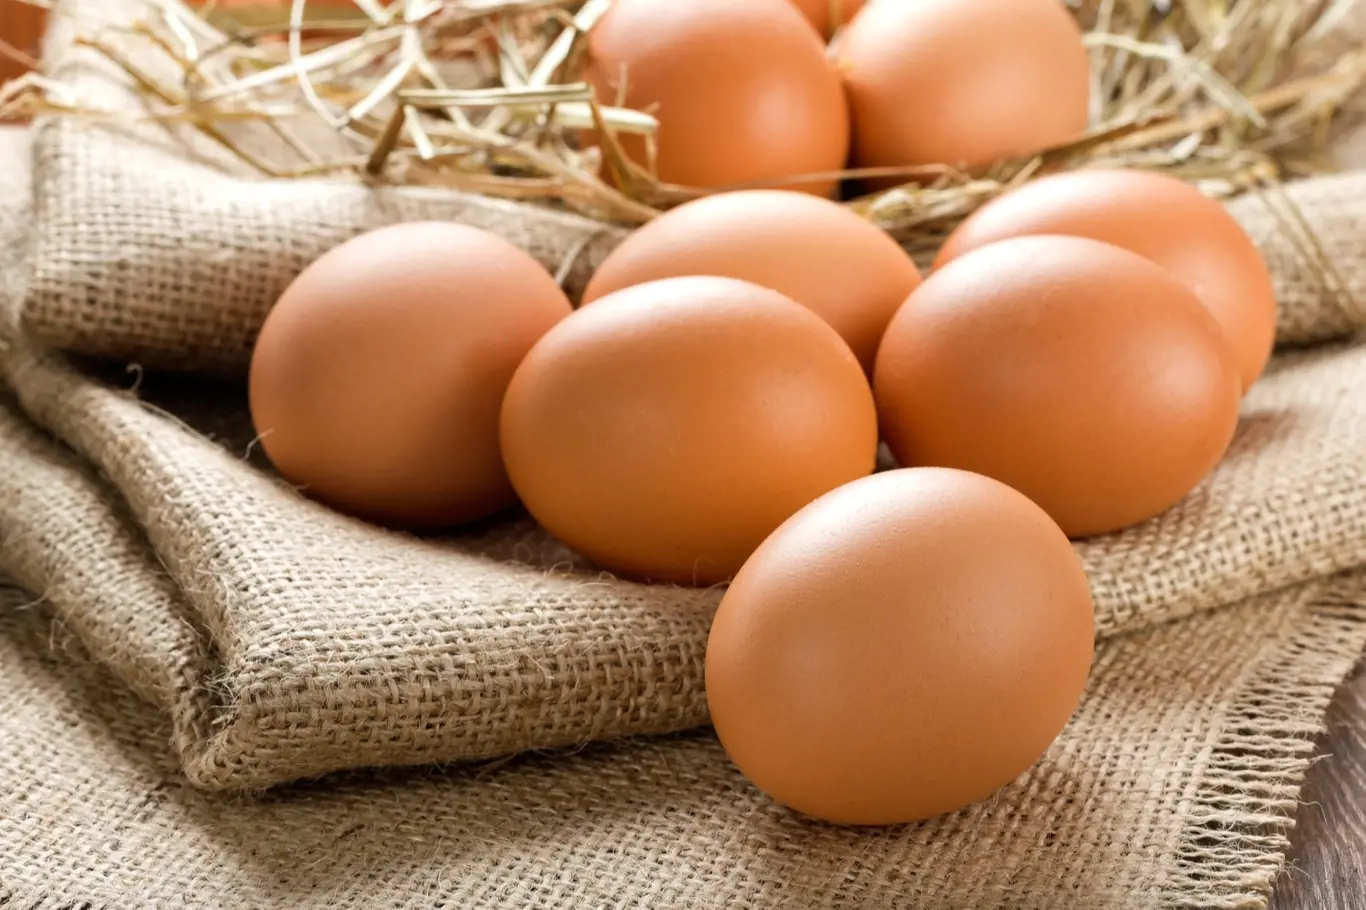 Poslední výzkumy dokazují, že vajíčka jsou zdravá. Teď letí omega vejce, ta jsou nejzdravější.